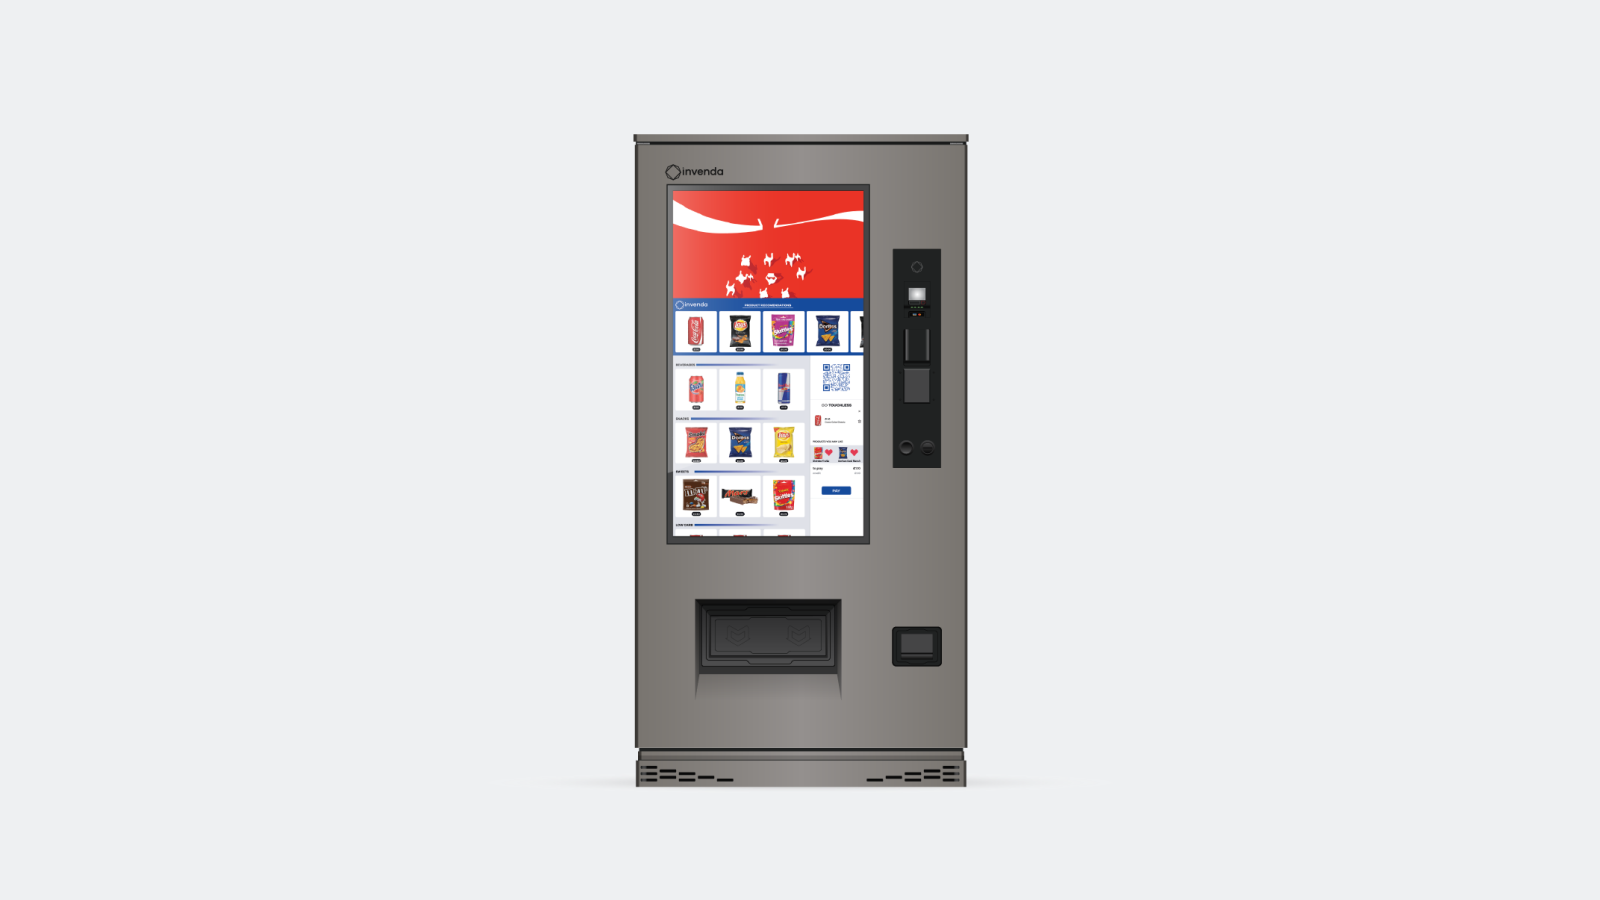 Grey outdoor smart vending machine